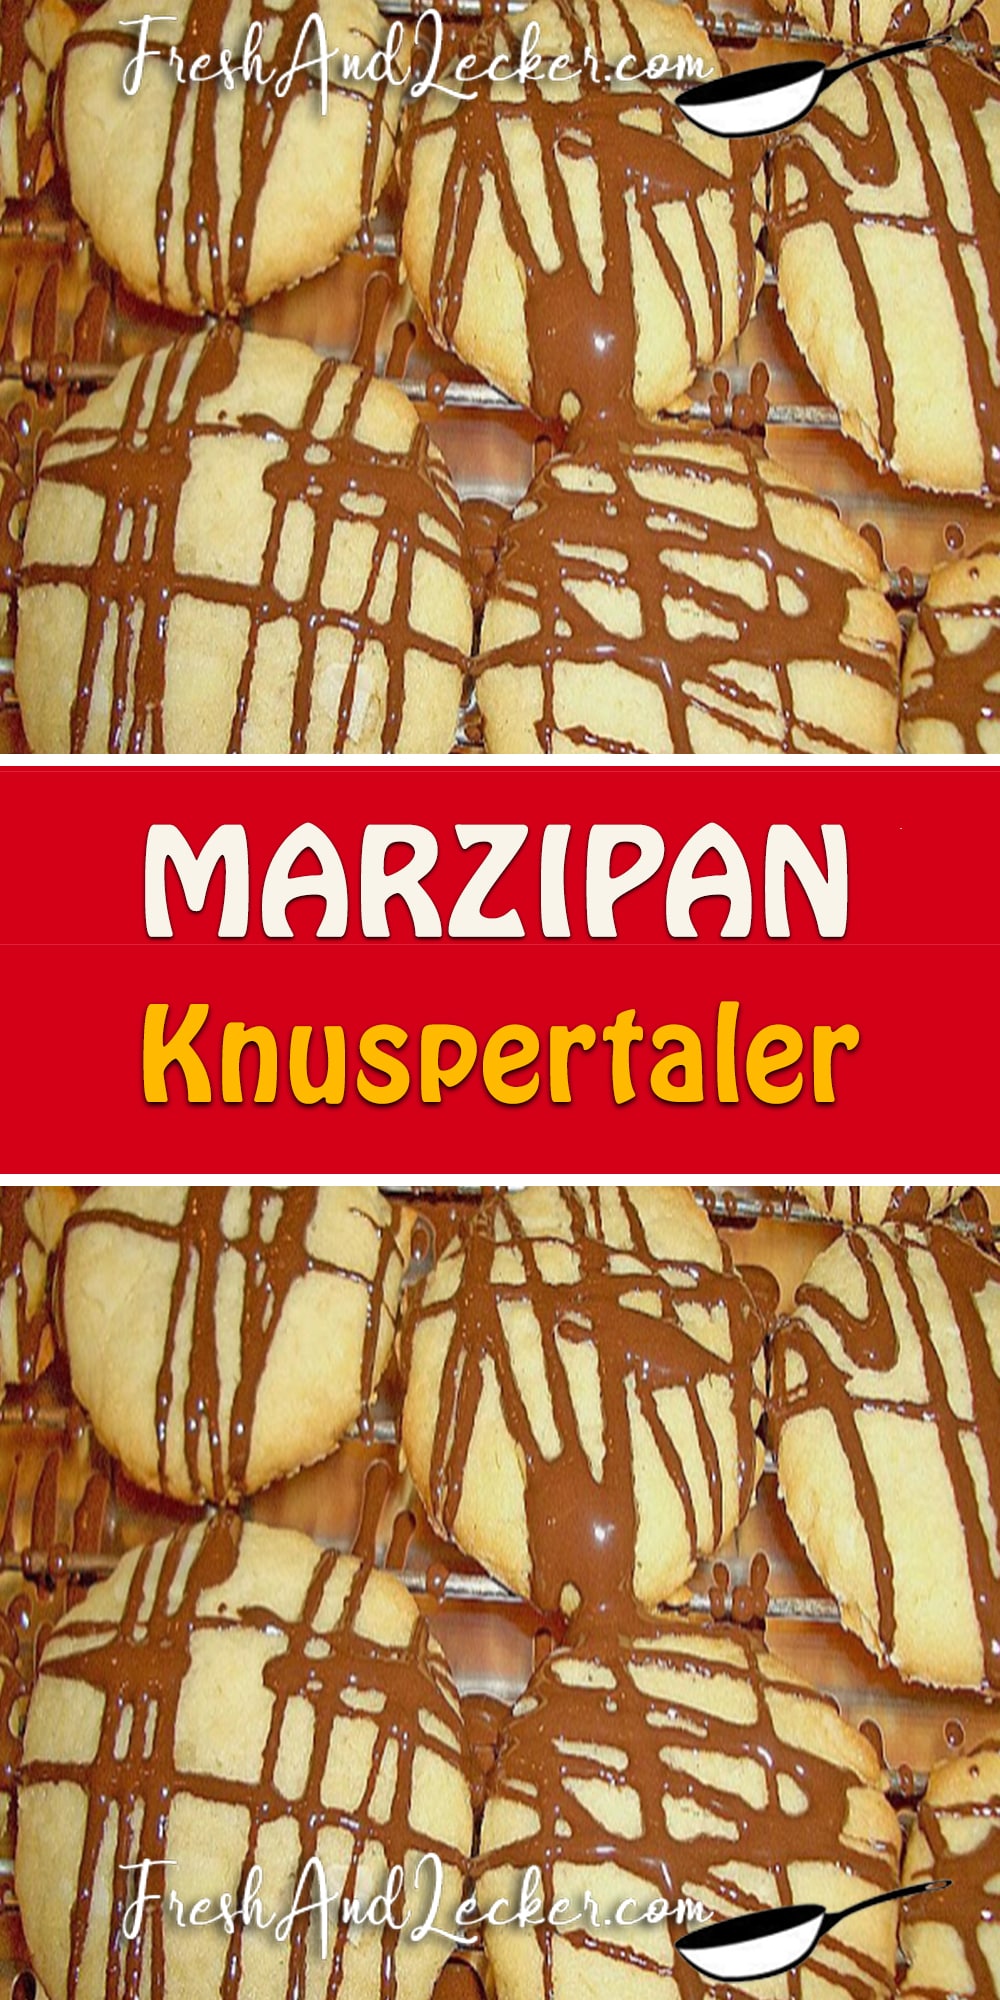 Marzipan Knuspertaler - Fresh Lecker